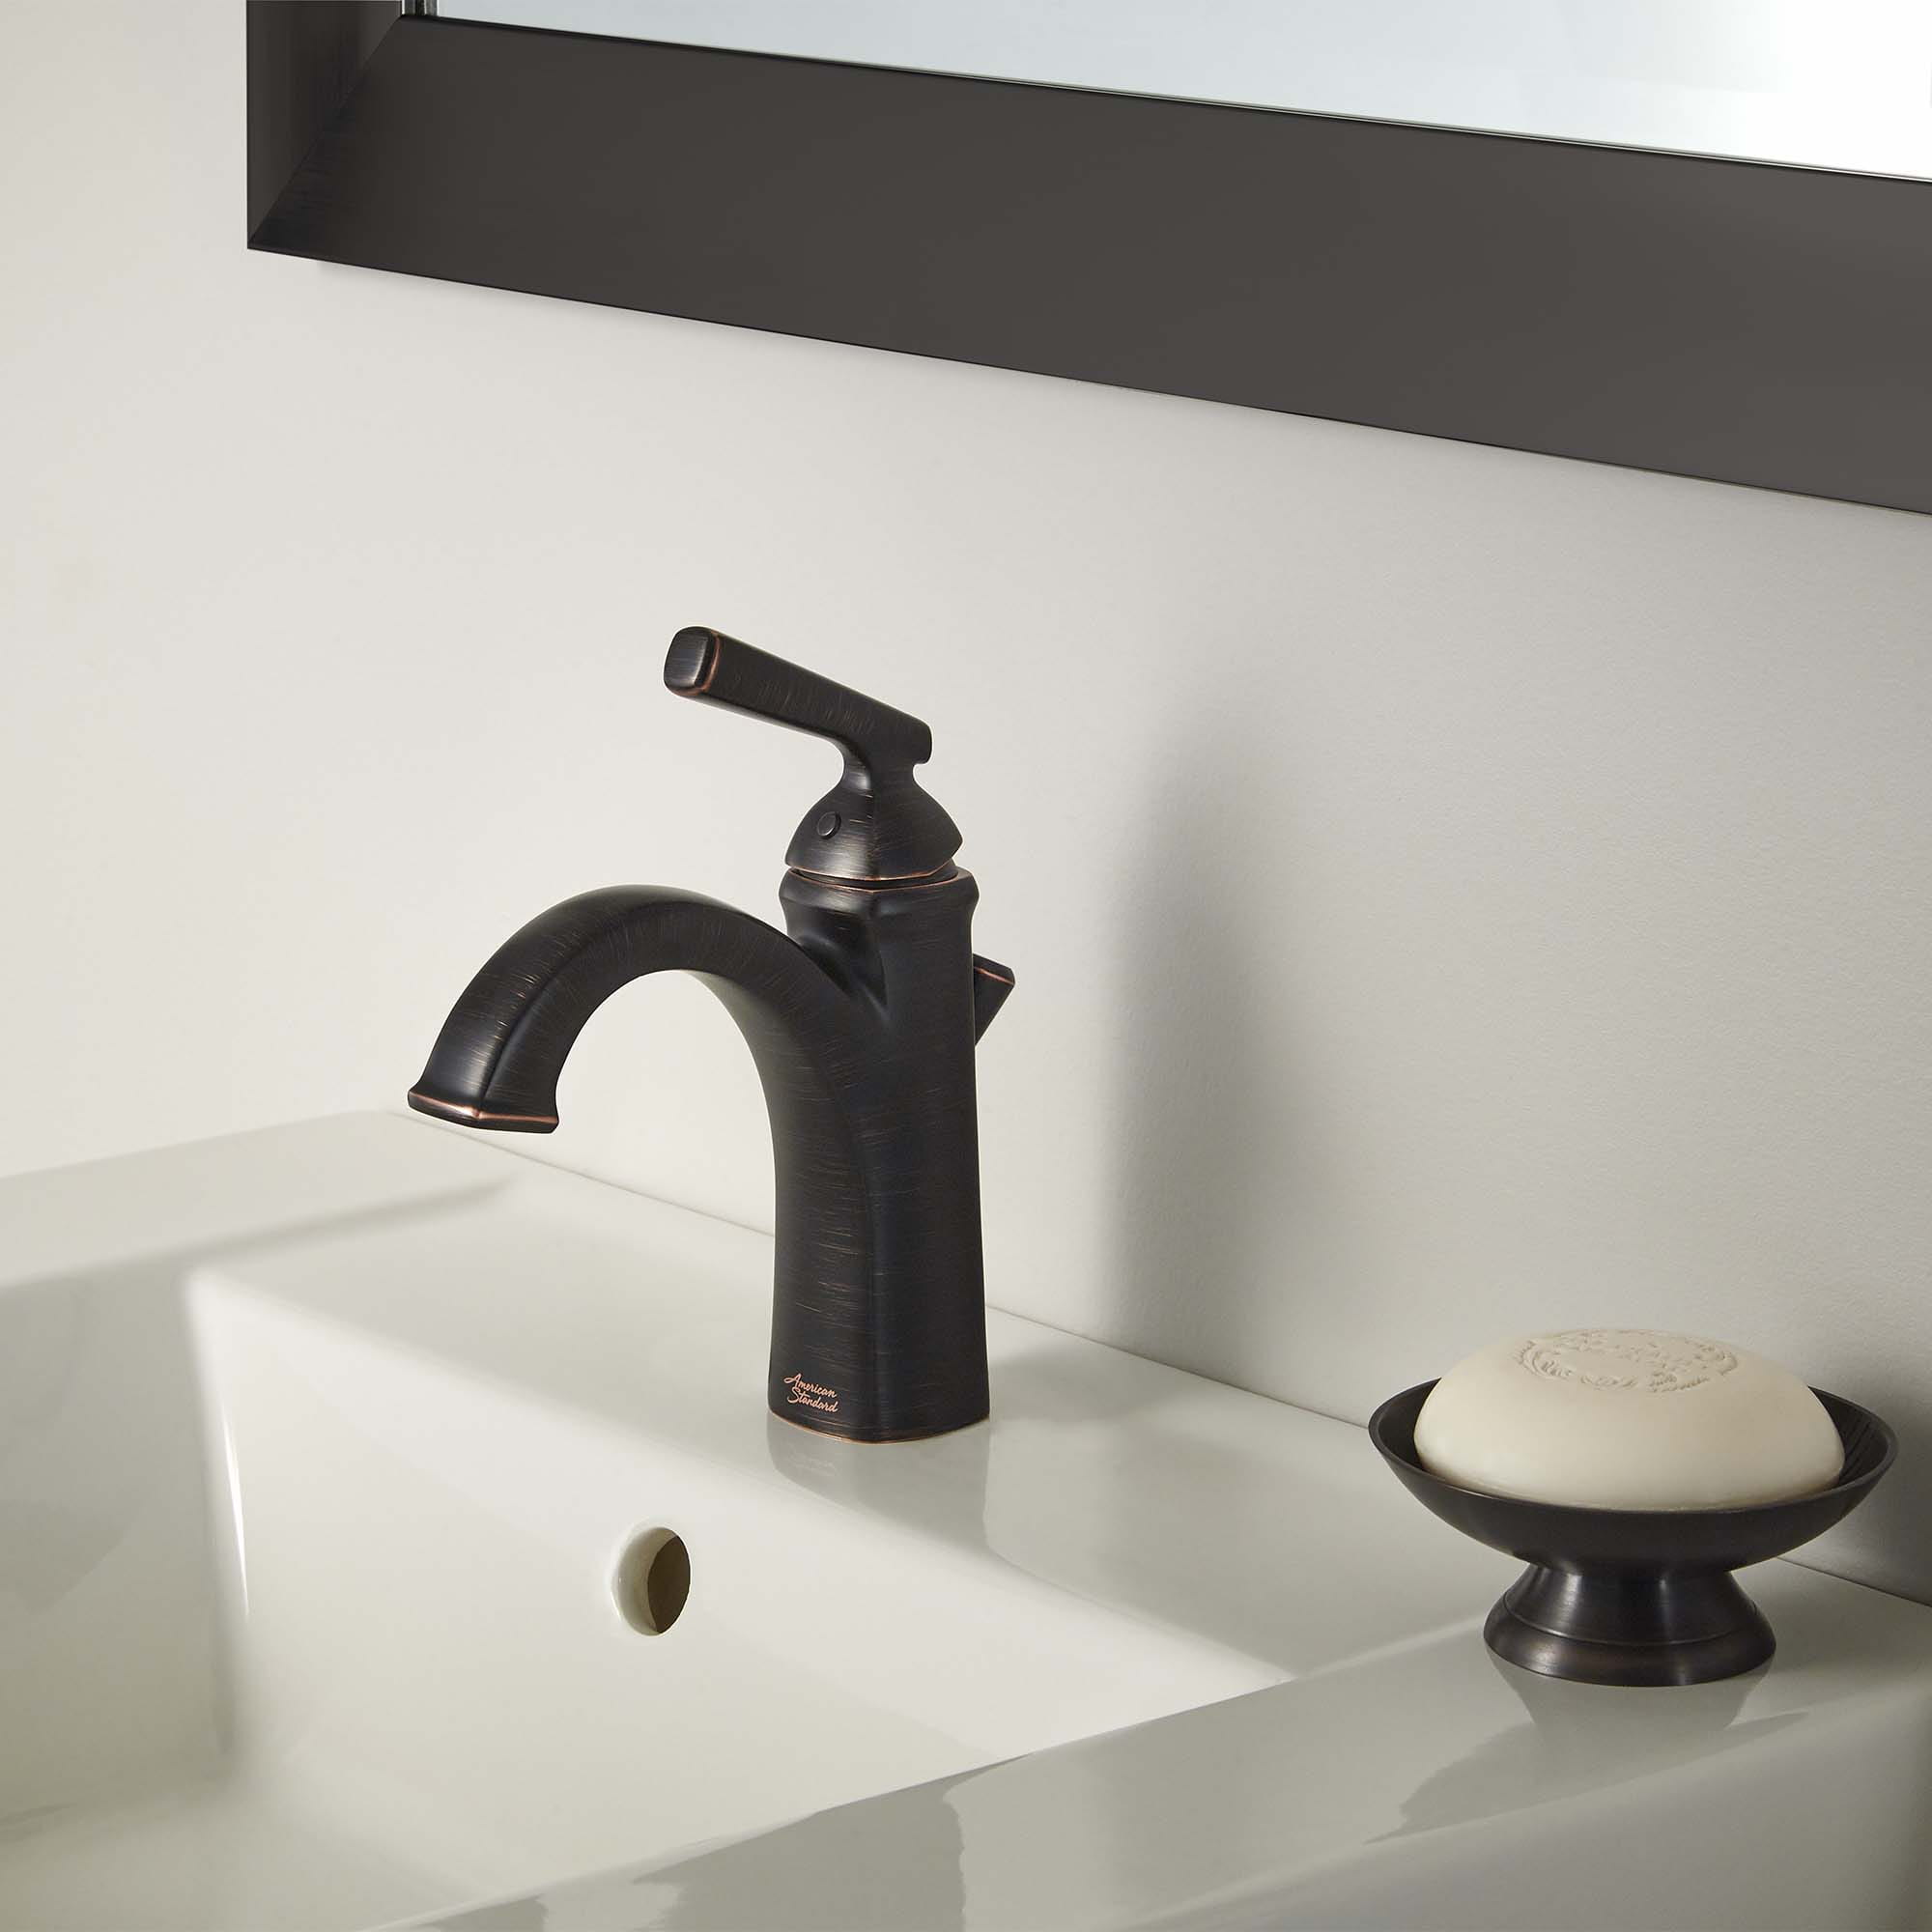 Kirkdale 1 Handle Monoblock Bathroom Sink Faucet LEGACY BRONZE